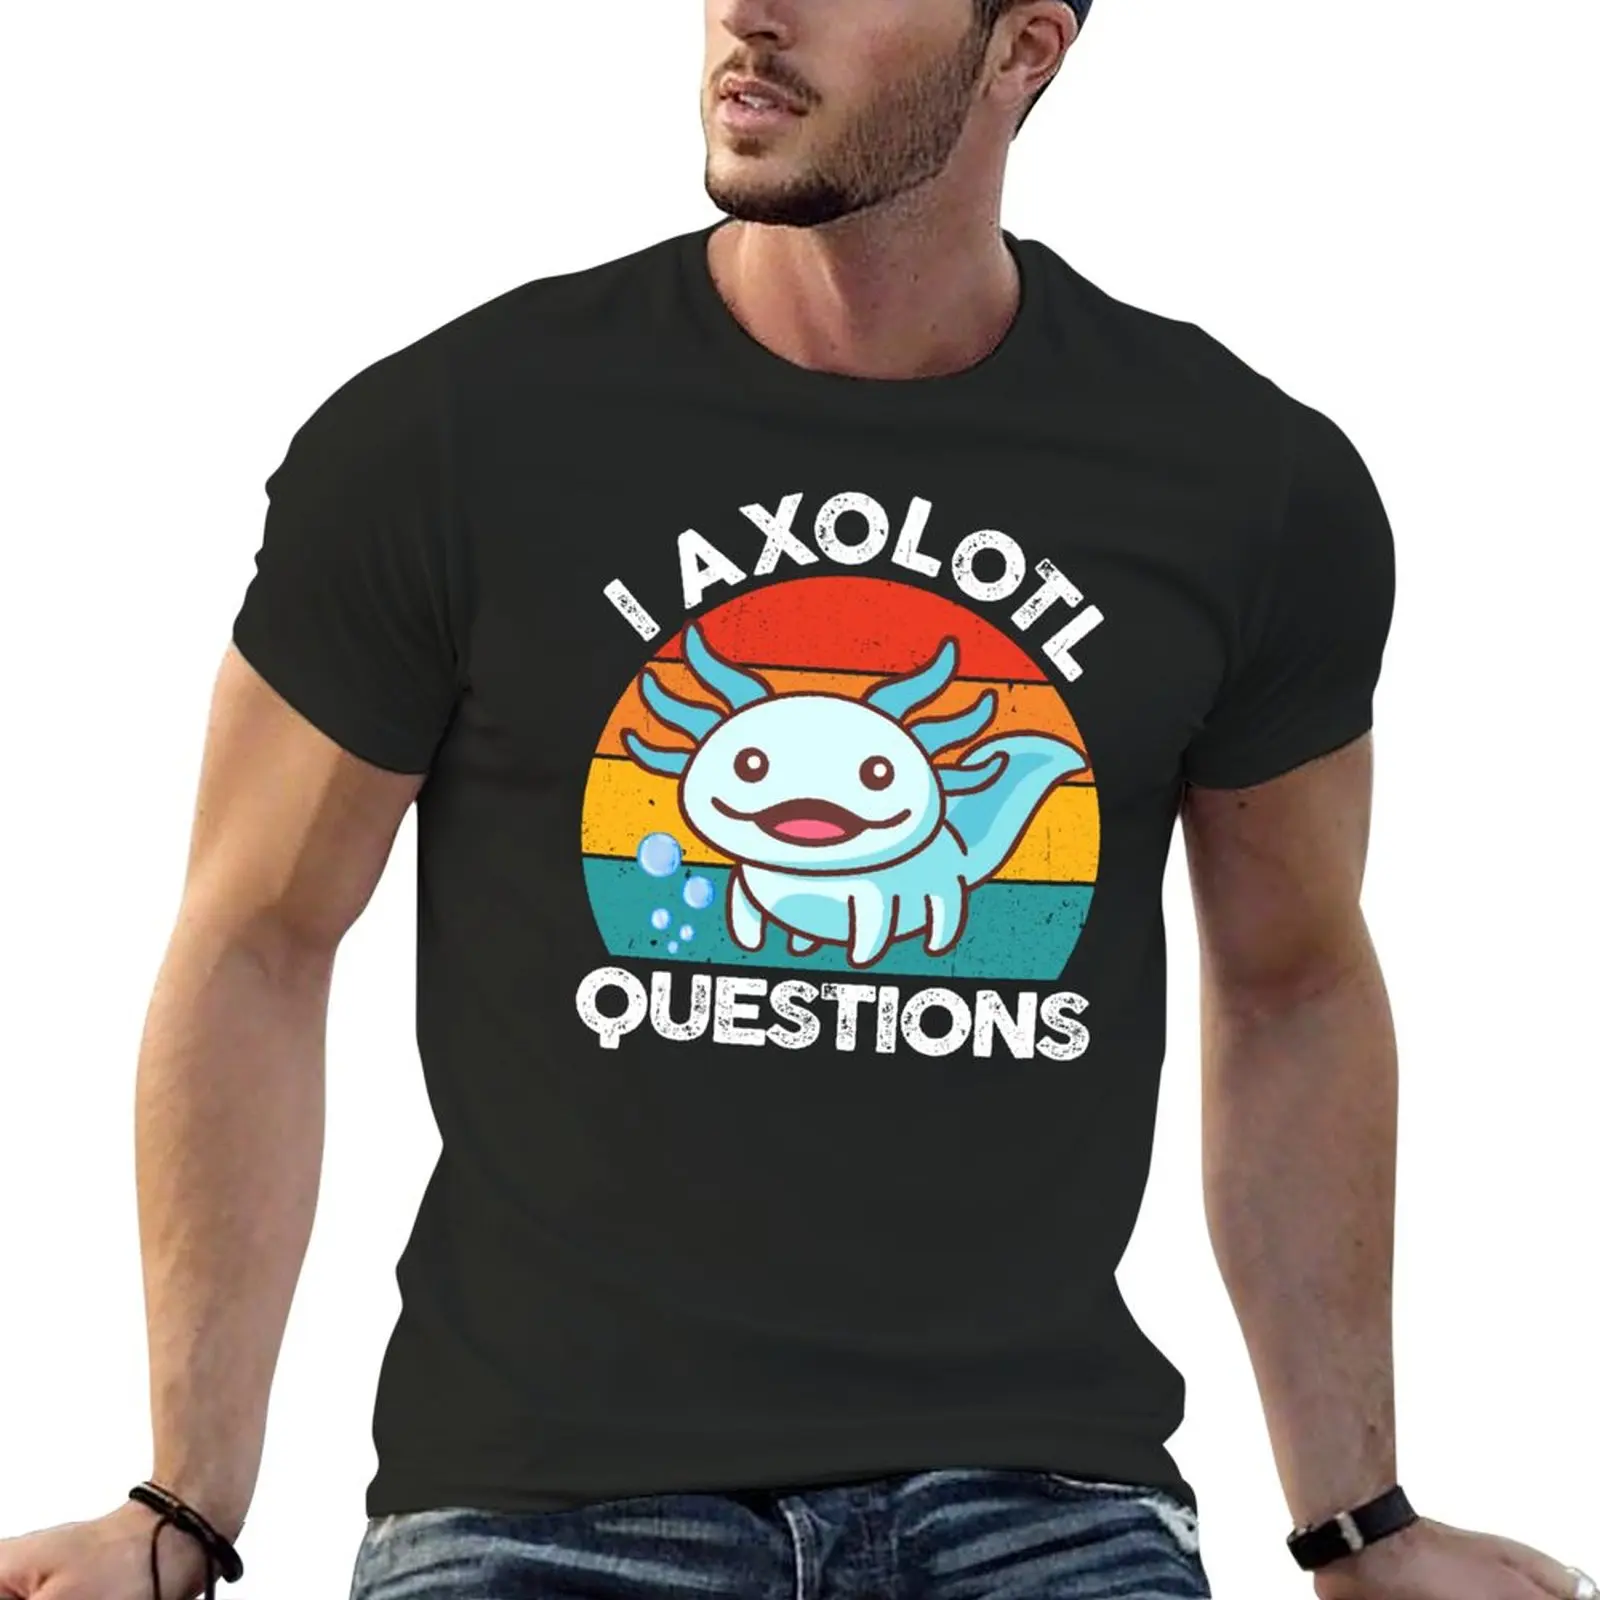 

New I Axolotl Questions Kids Cute Axolotl T-Shirt black t shirts black t shirt T-shirt men